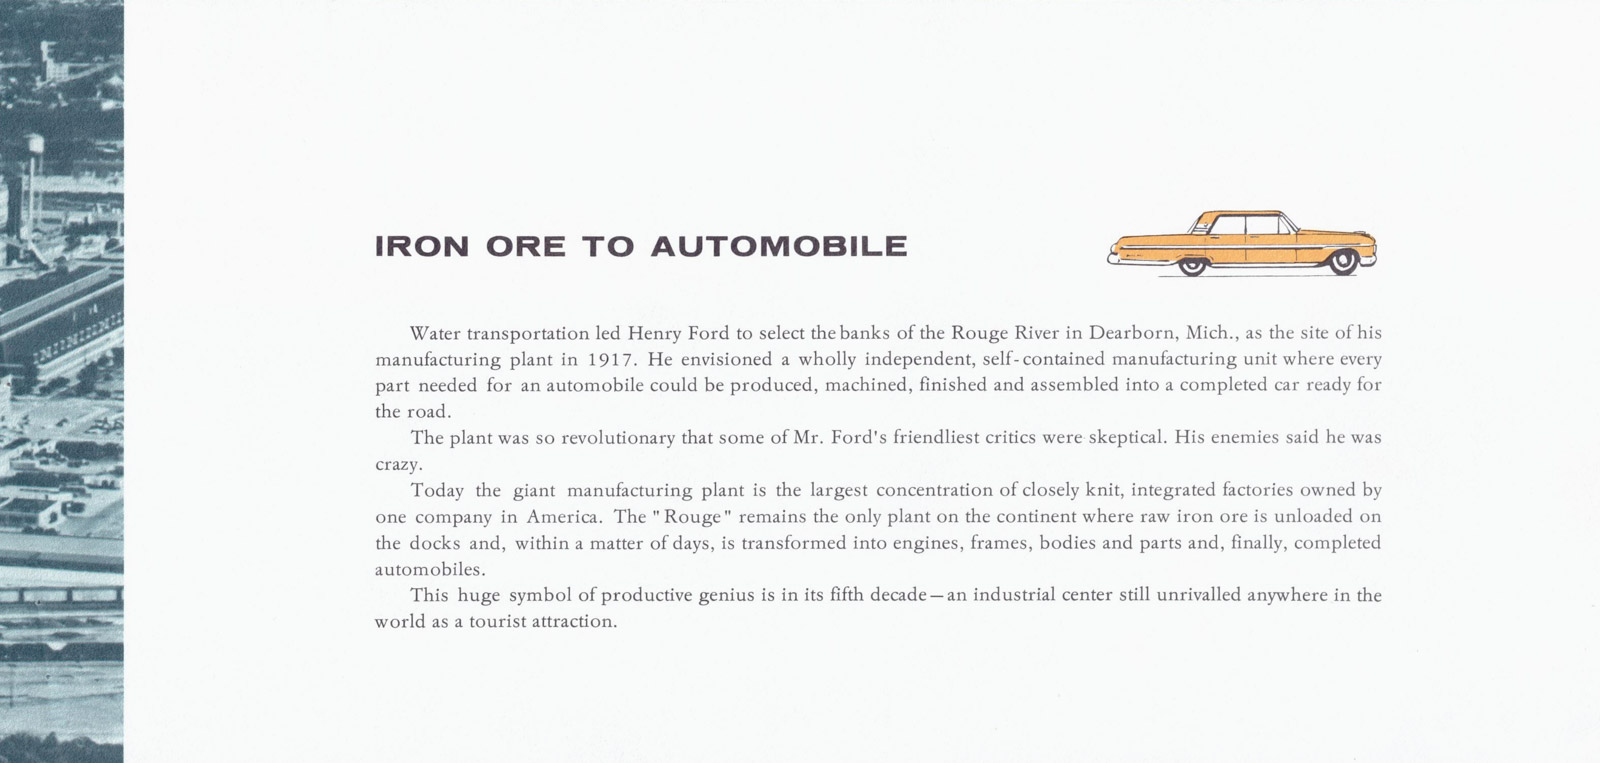 Iron Ore to Automobile